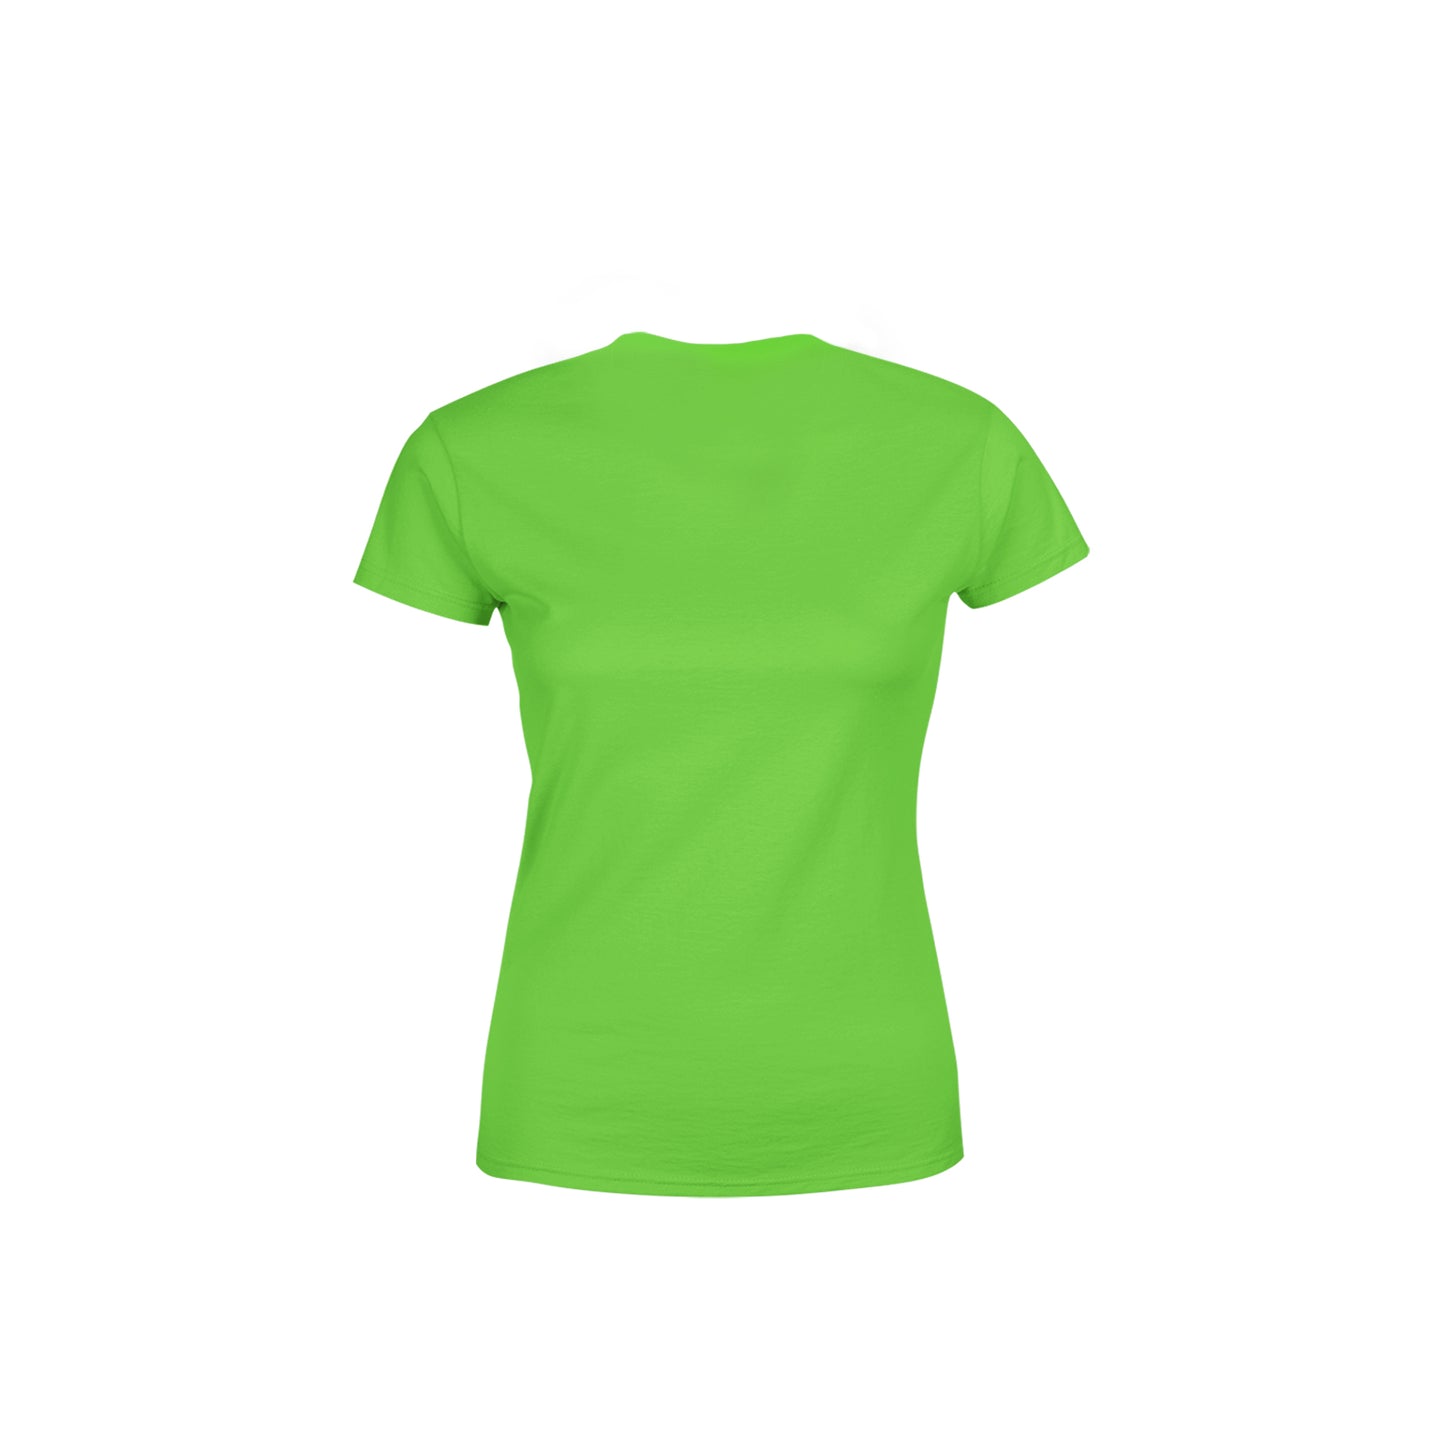 07 Number Women's T-Shirt (Liril Green)